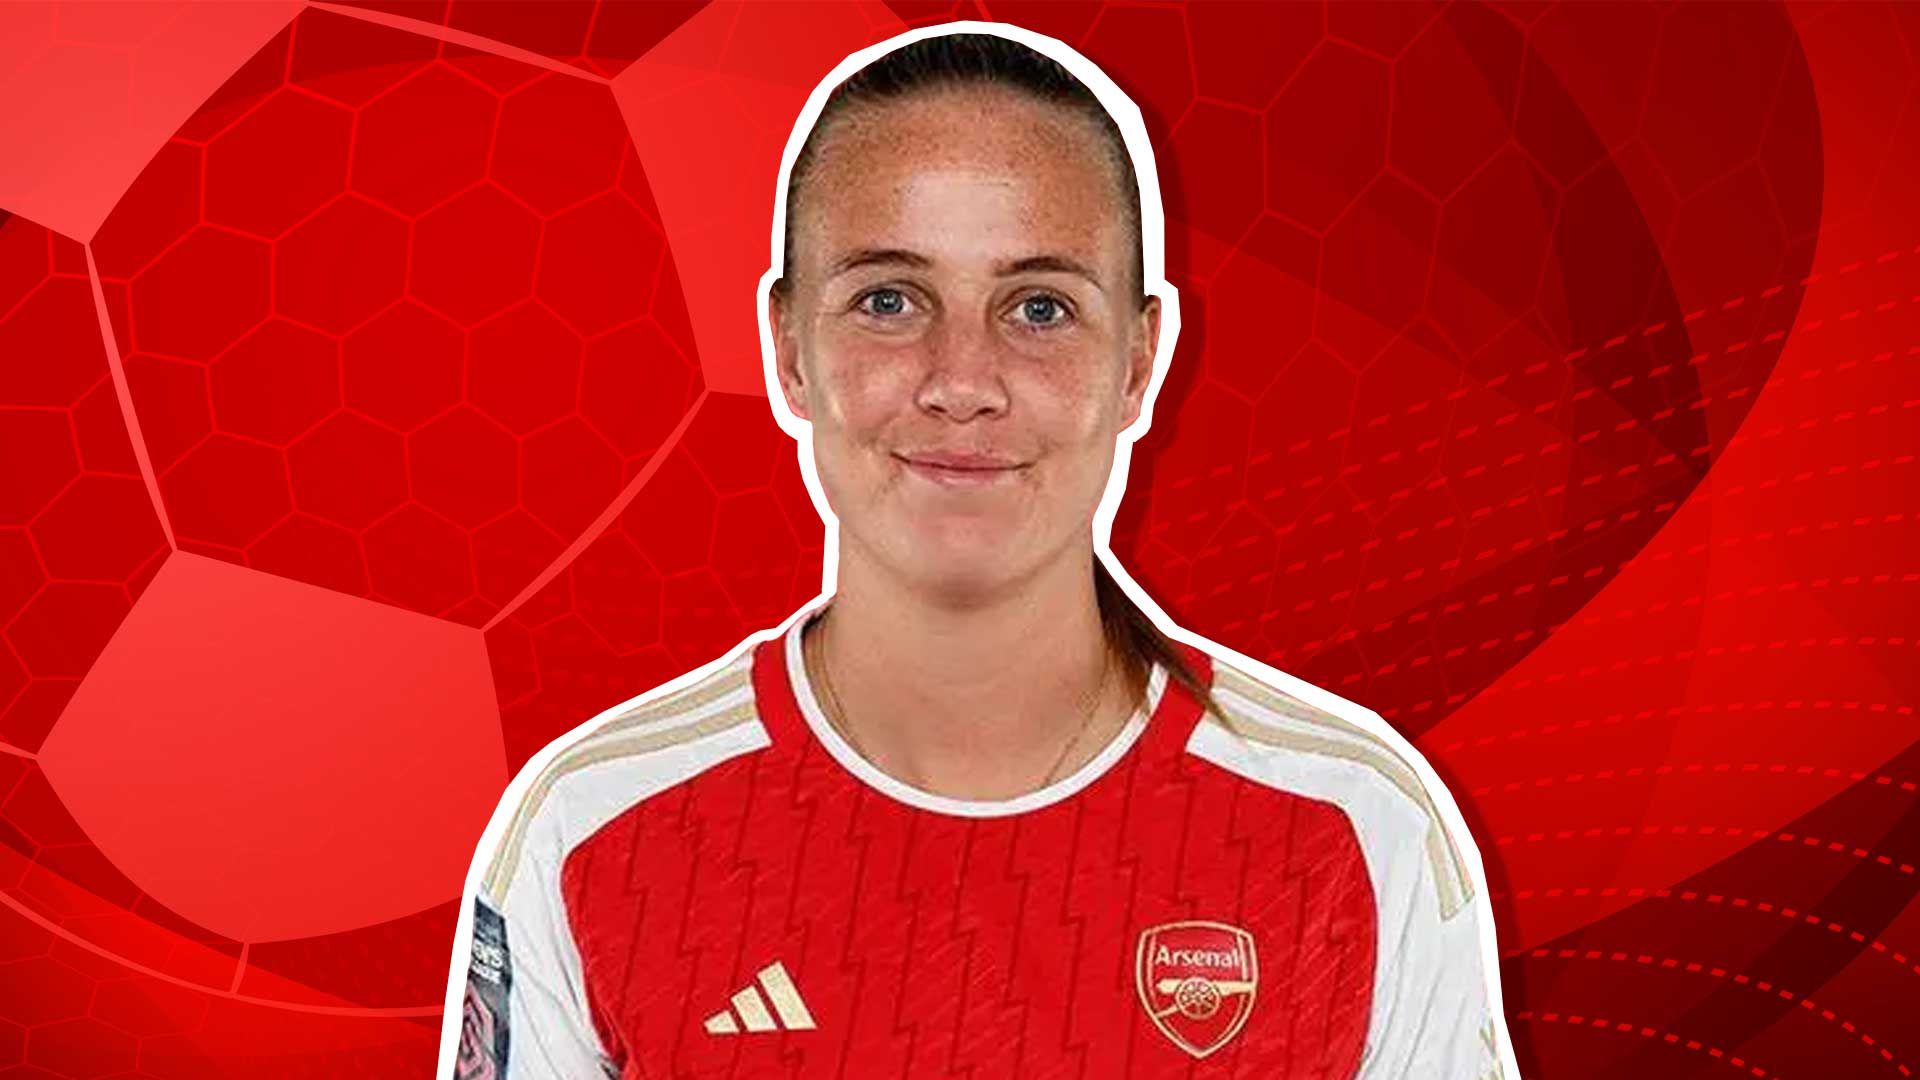 Arsenal forward Beth Mead